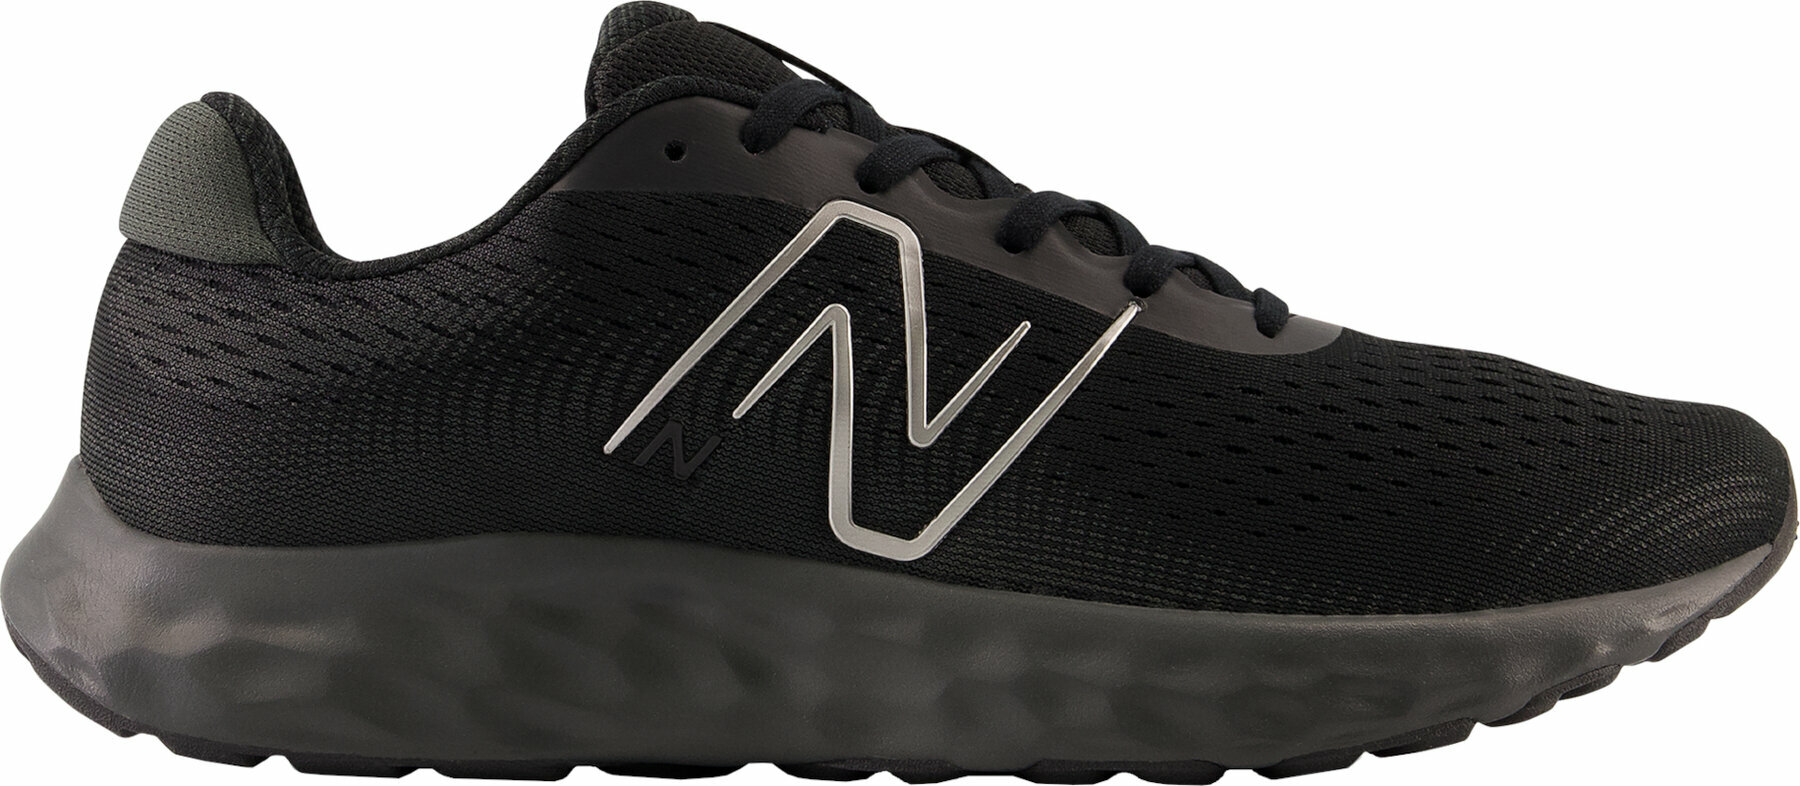 Silniční běžecká obuv New Balance Mens M520 Black 44 Silniční běžecká obuv